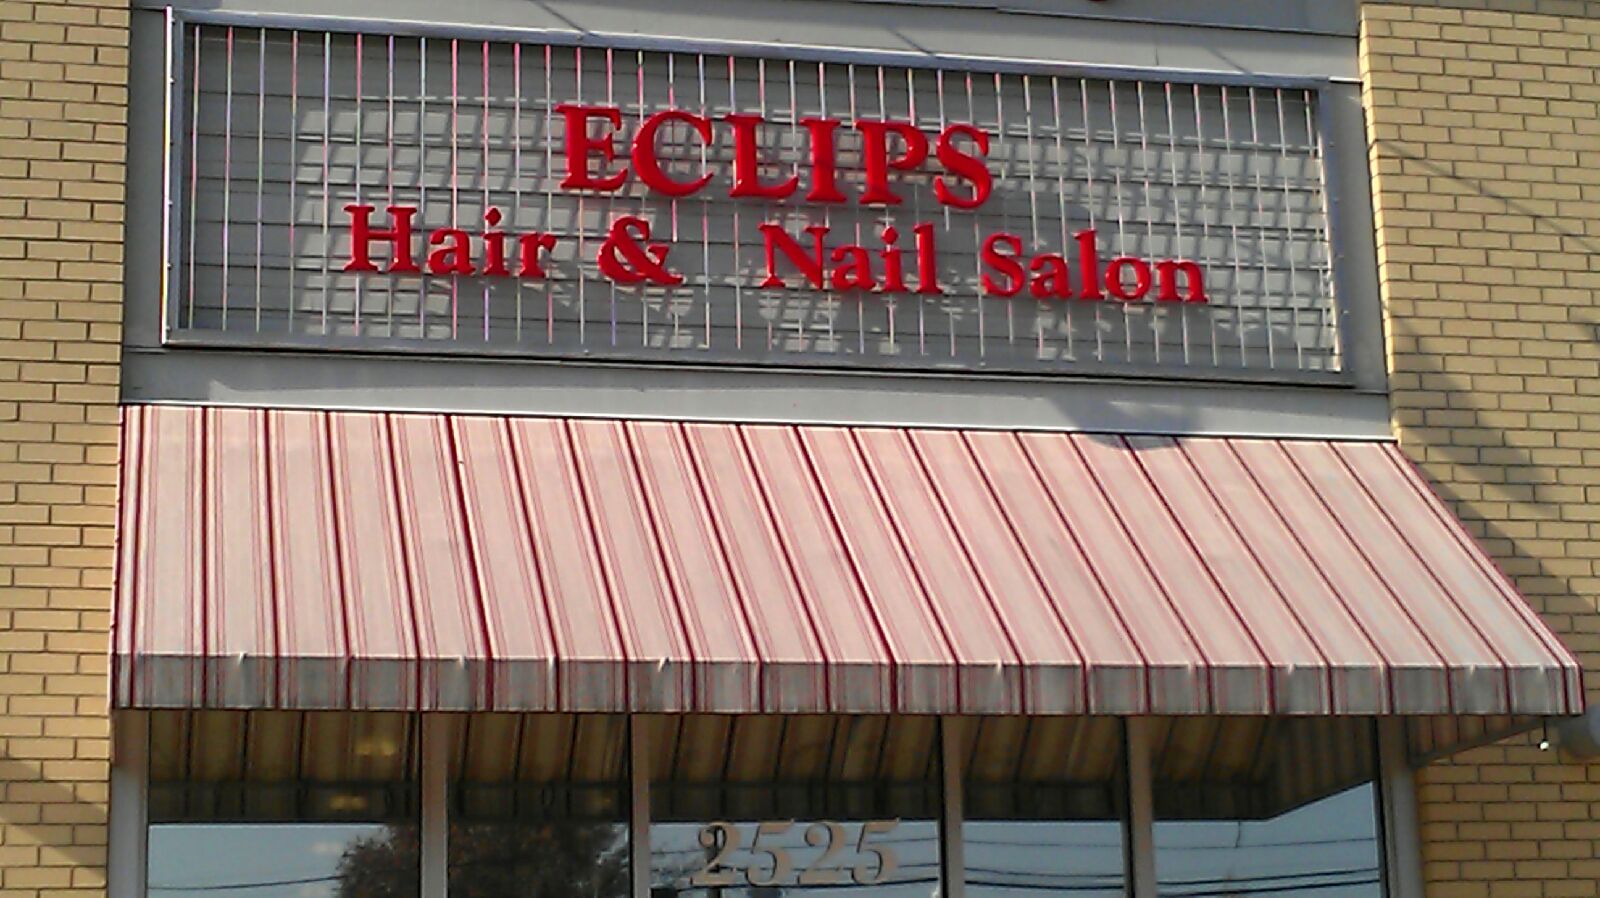 Eclips Hair & Nail Salon